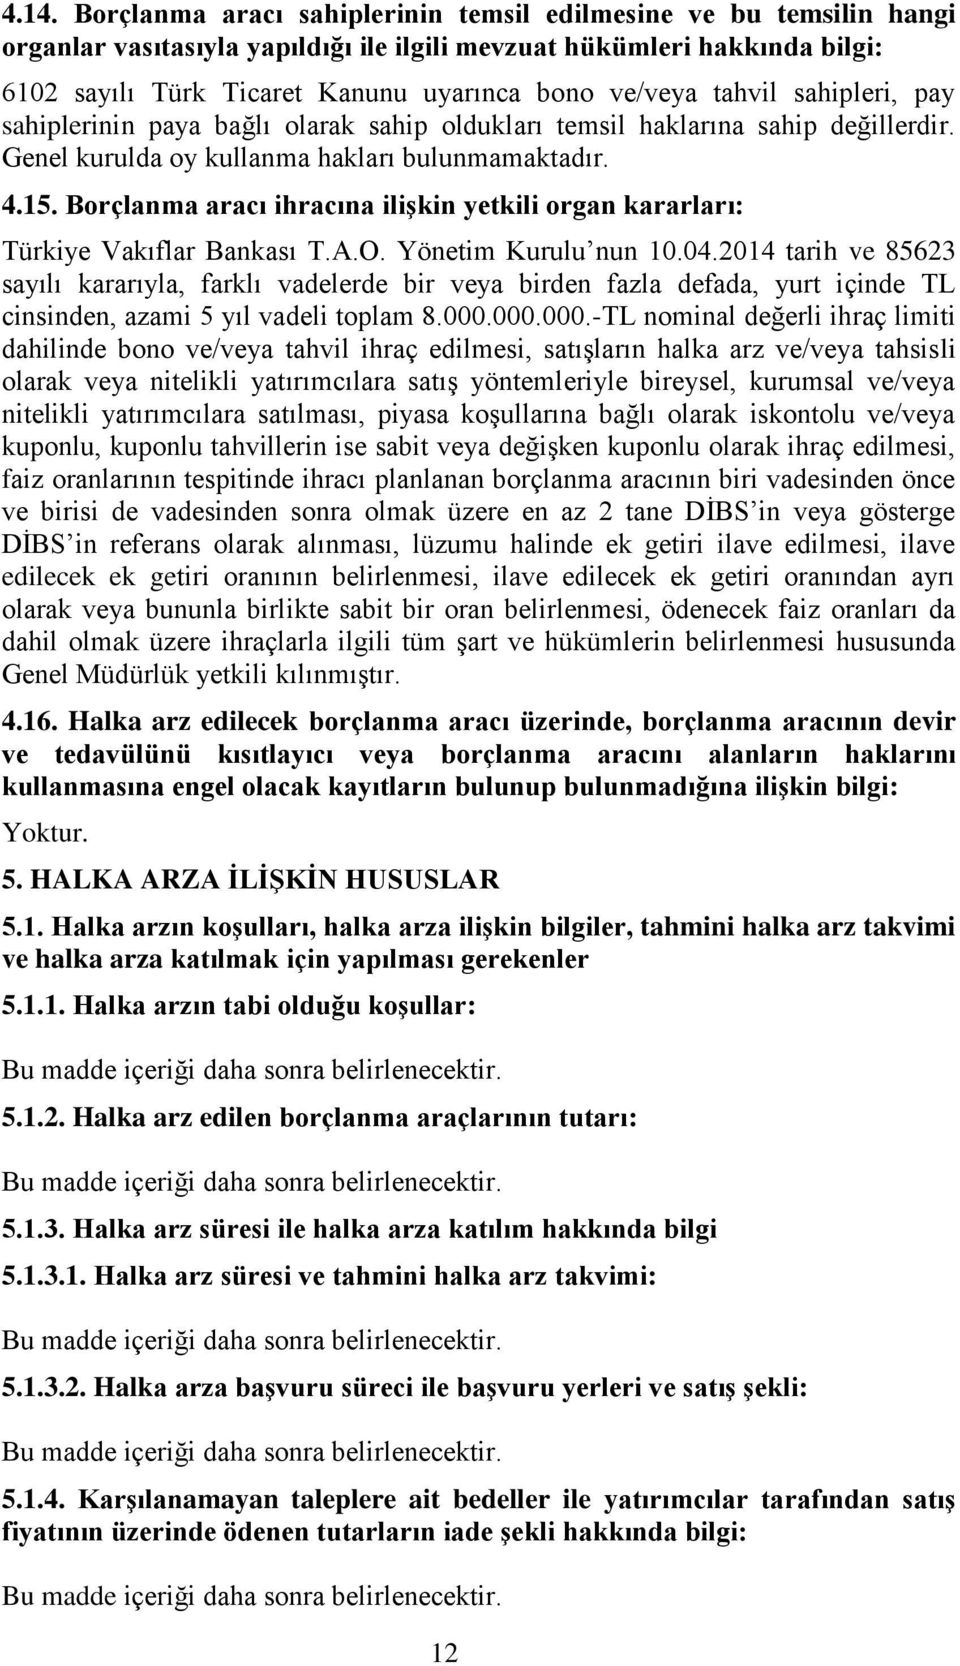 Borçlanma aracı ihracına ilişkin yetkili organ kararları: Türkiye Vakıflar Bankası T.A.O. Yönetim Kurulu nun 10.04.